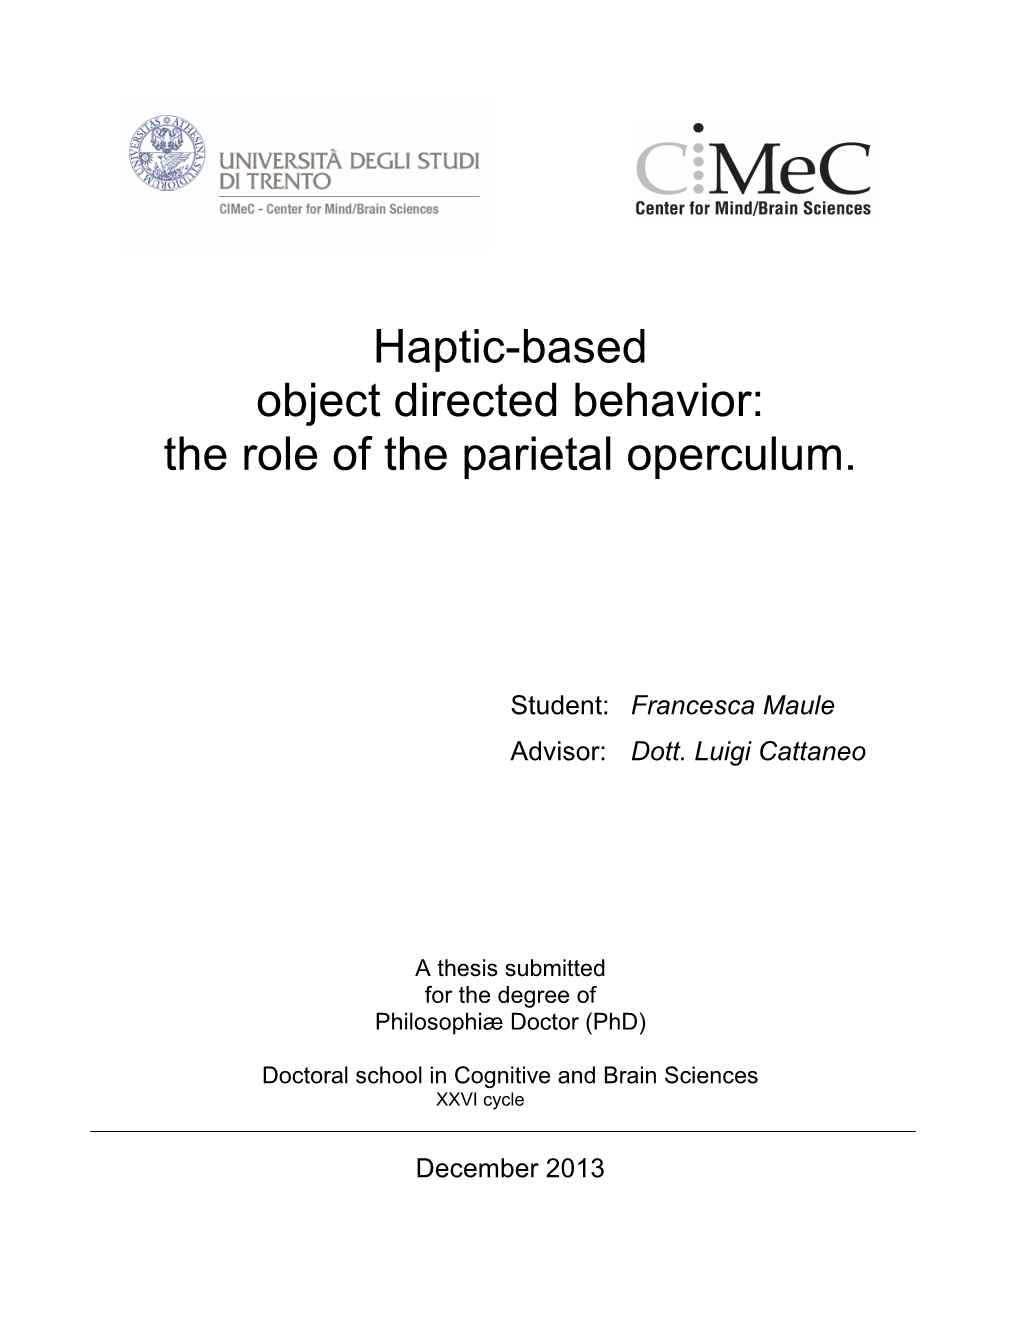 The Role of the Parietal Operculum